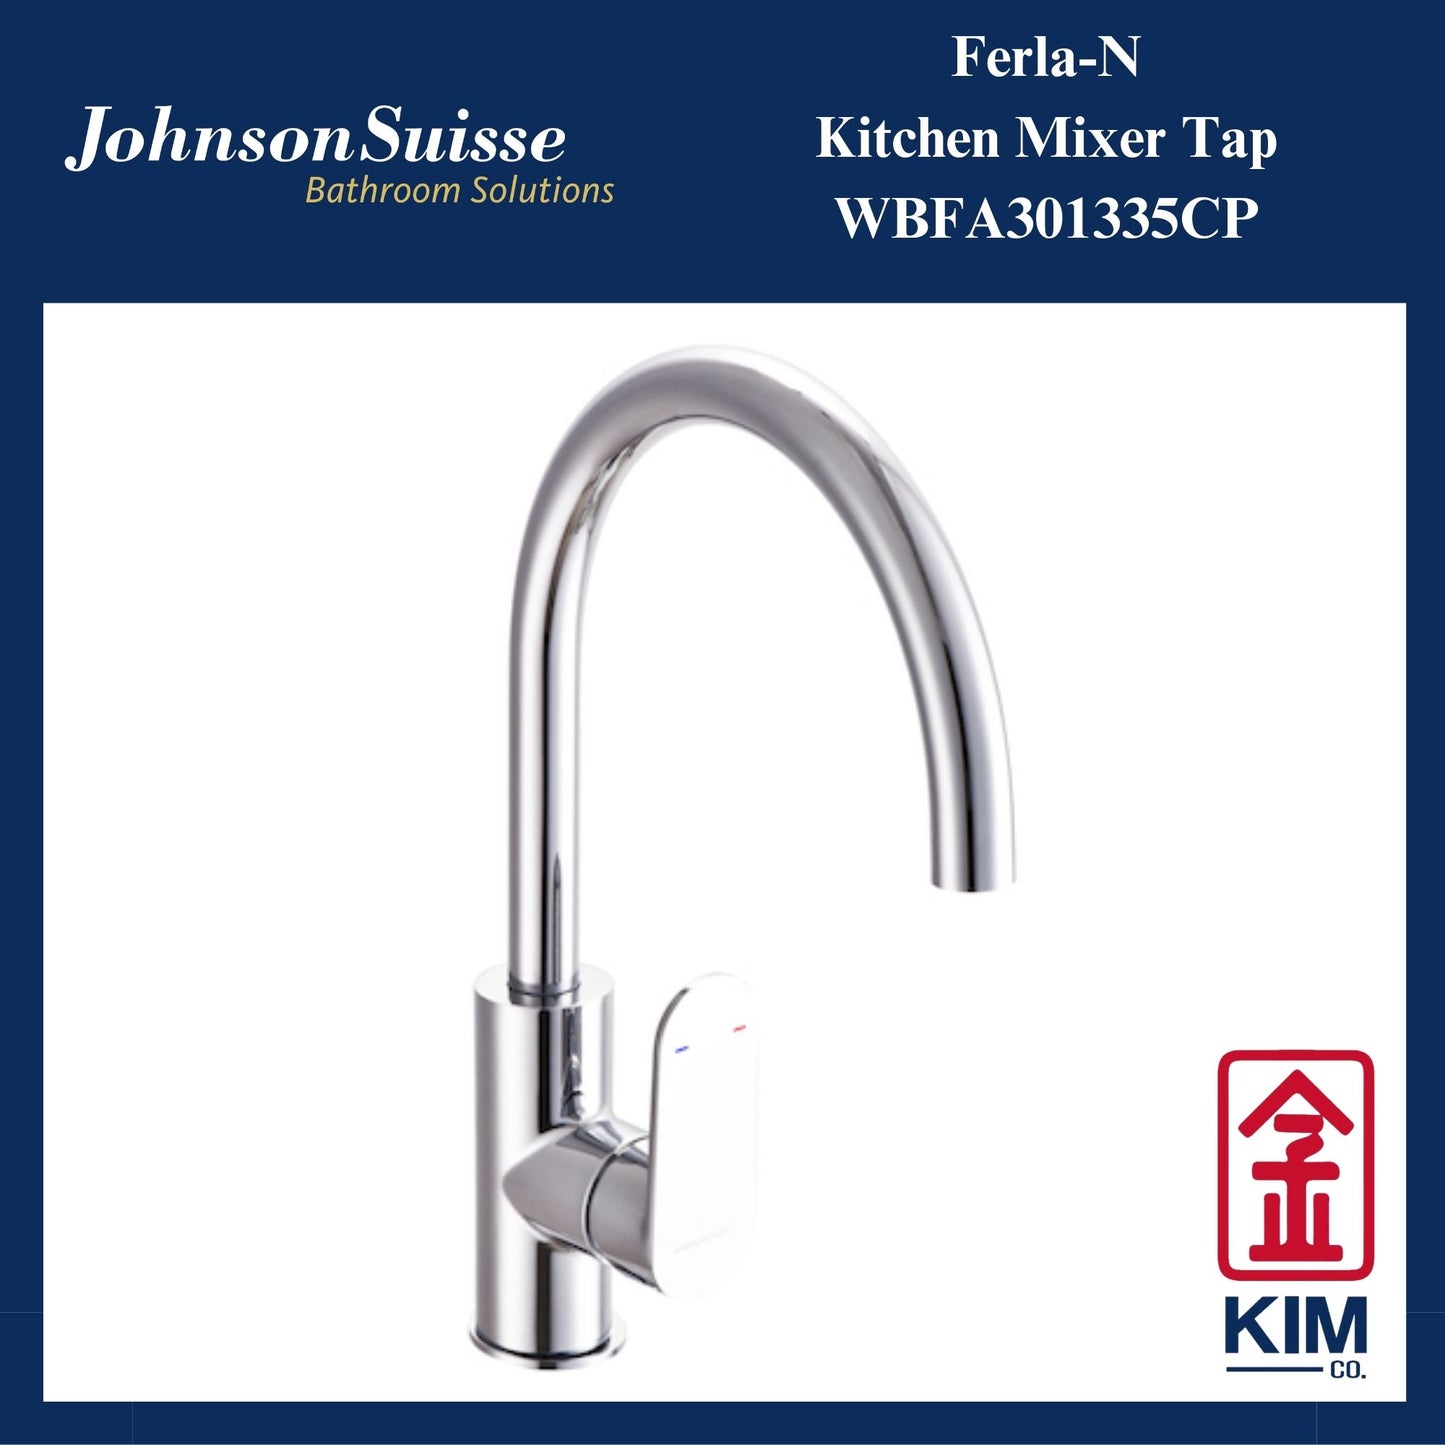 Johnson Suisse Ferla-N Deck Mounted Kitchen Sink Mixer Tap (WBFA301335CP)